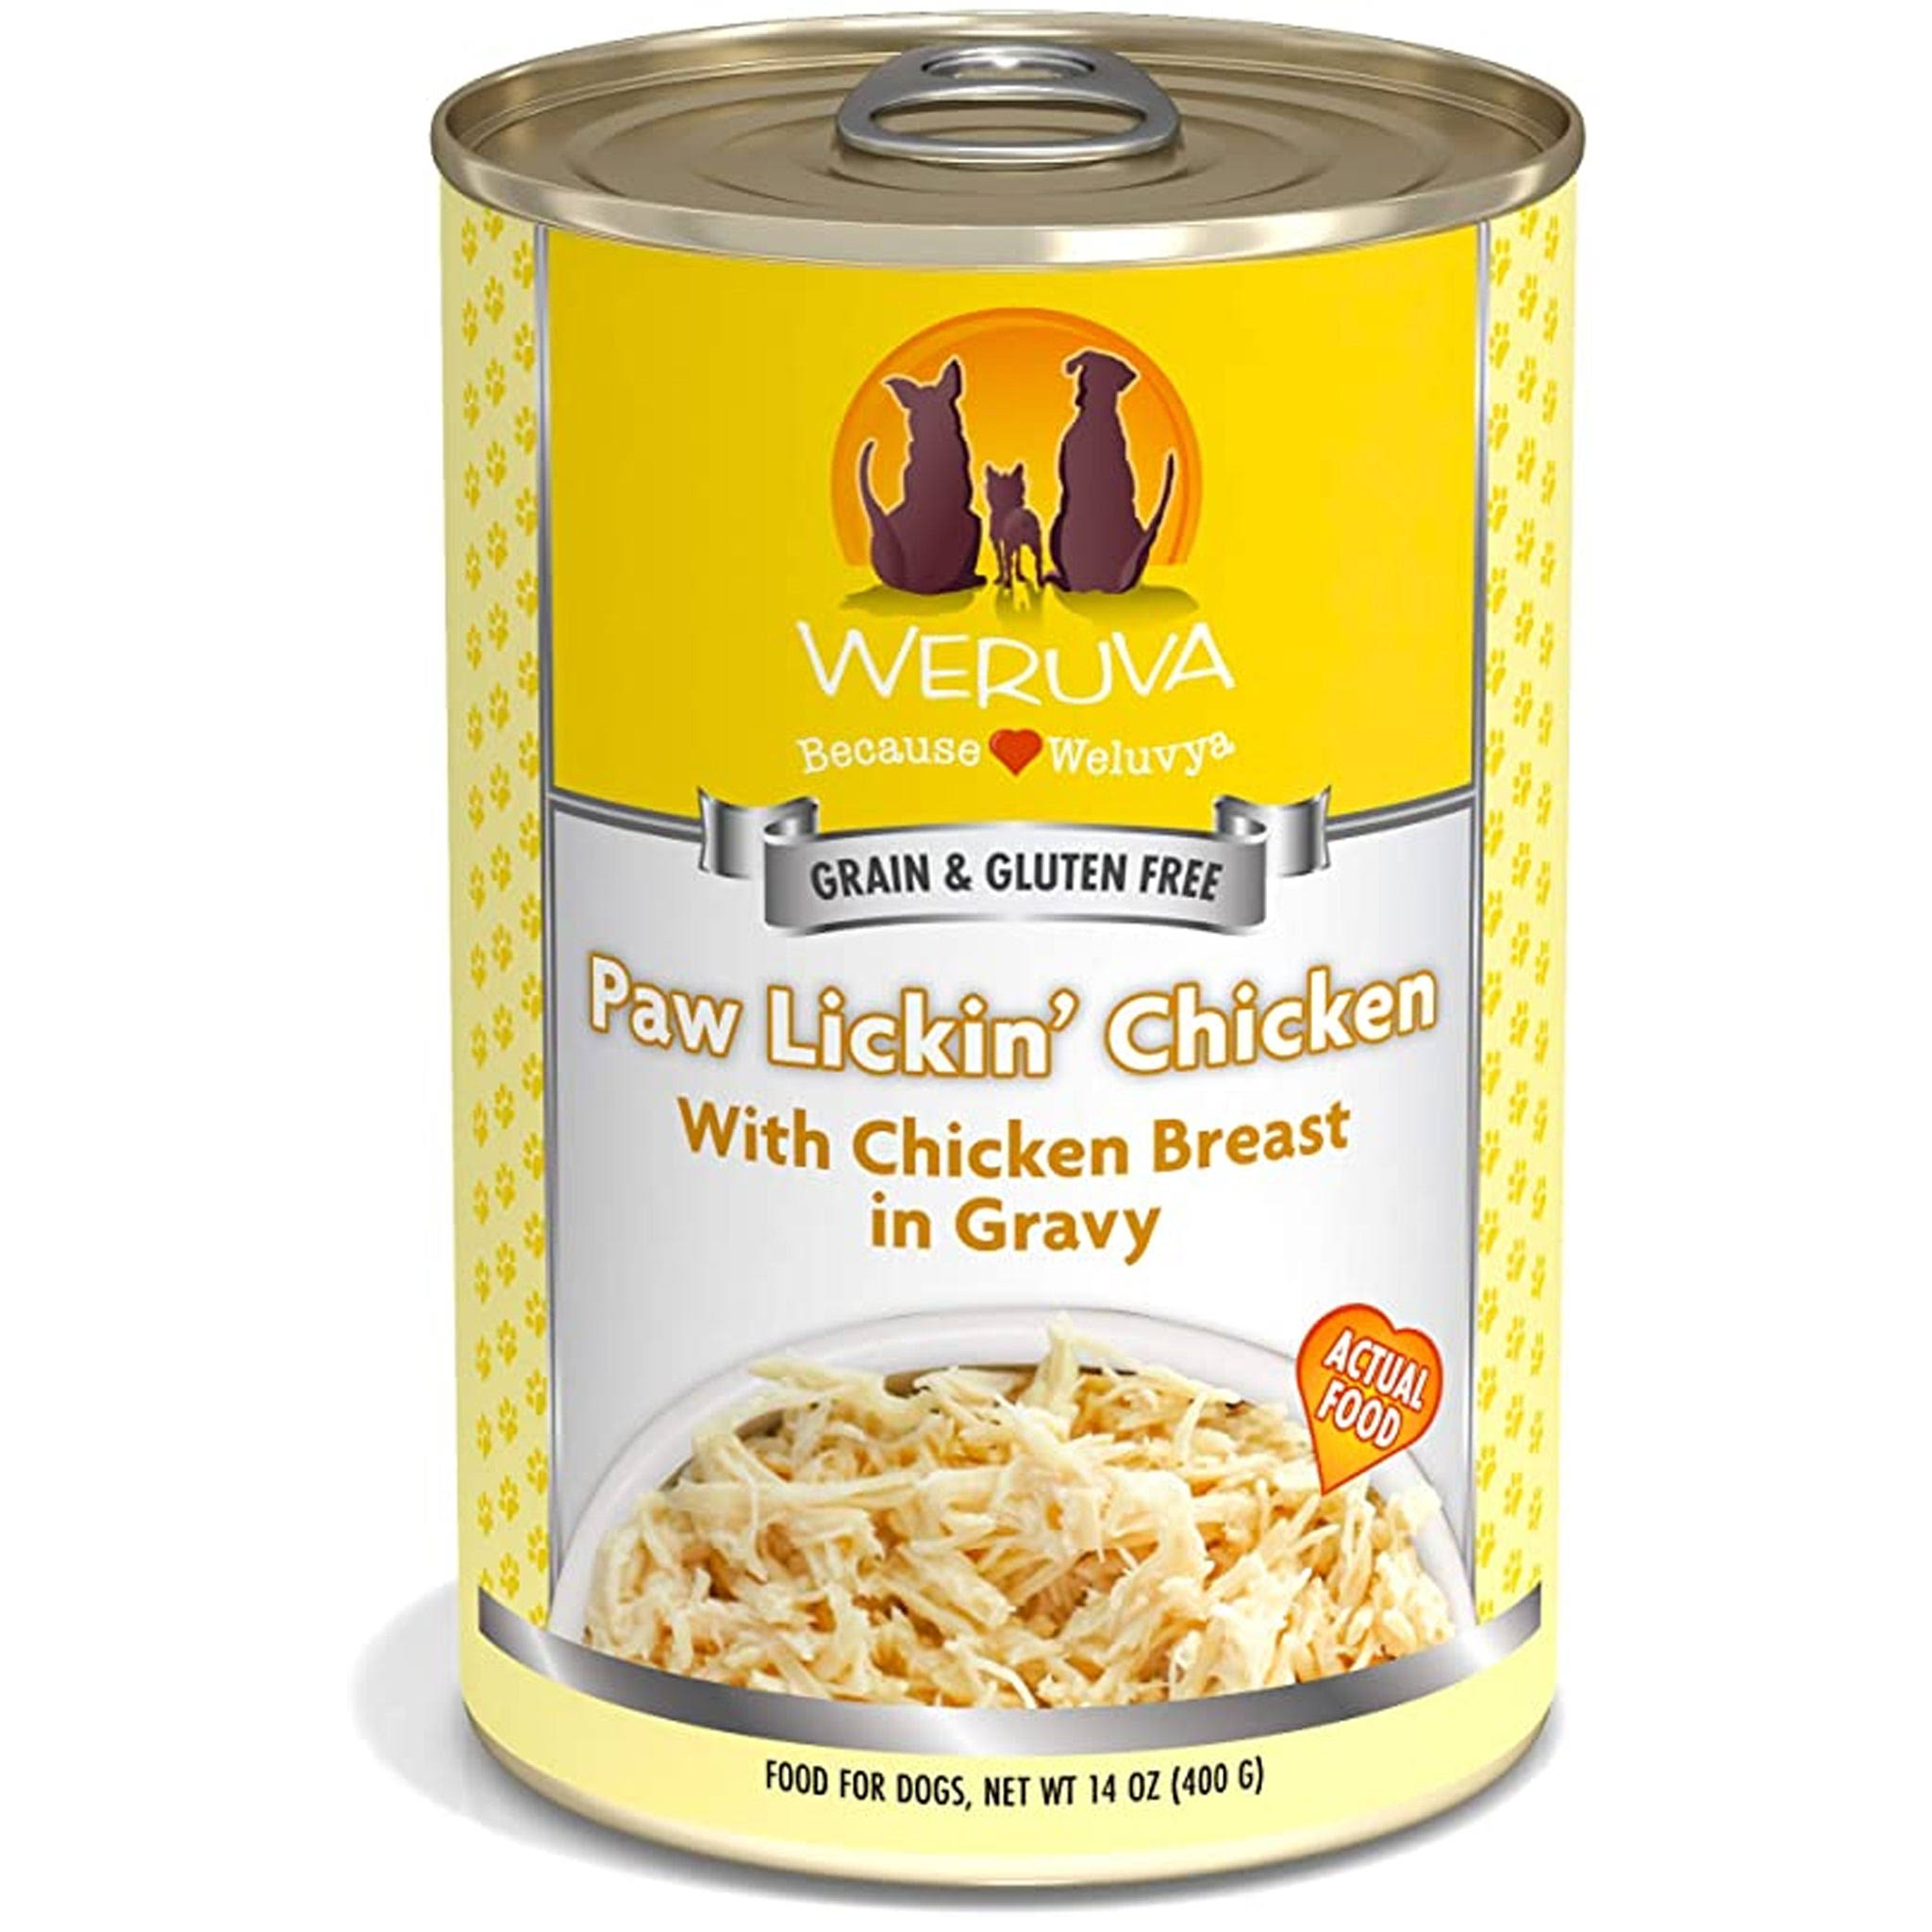 Weruva Dog Food - Paw Lickin' Chicken